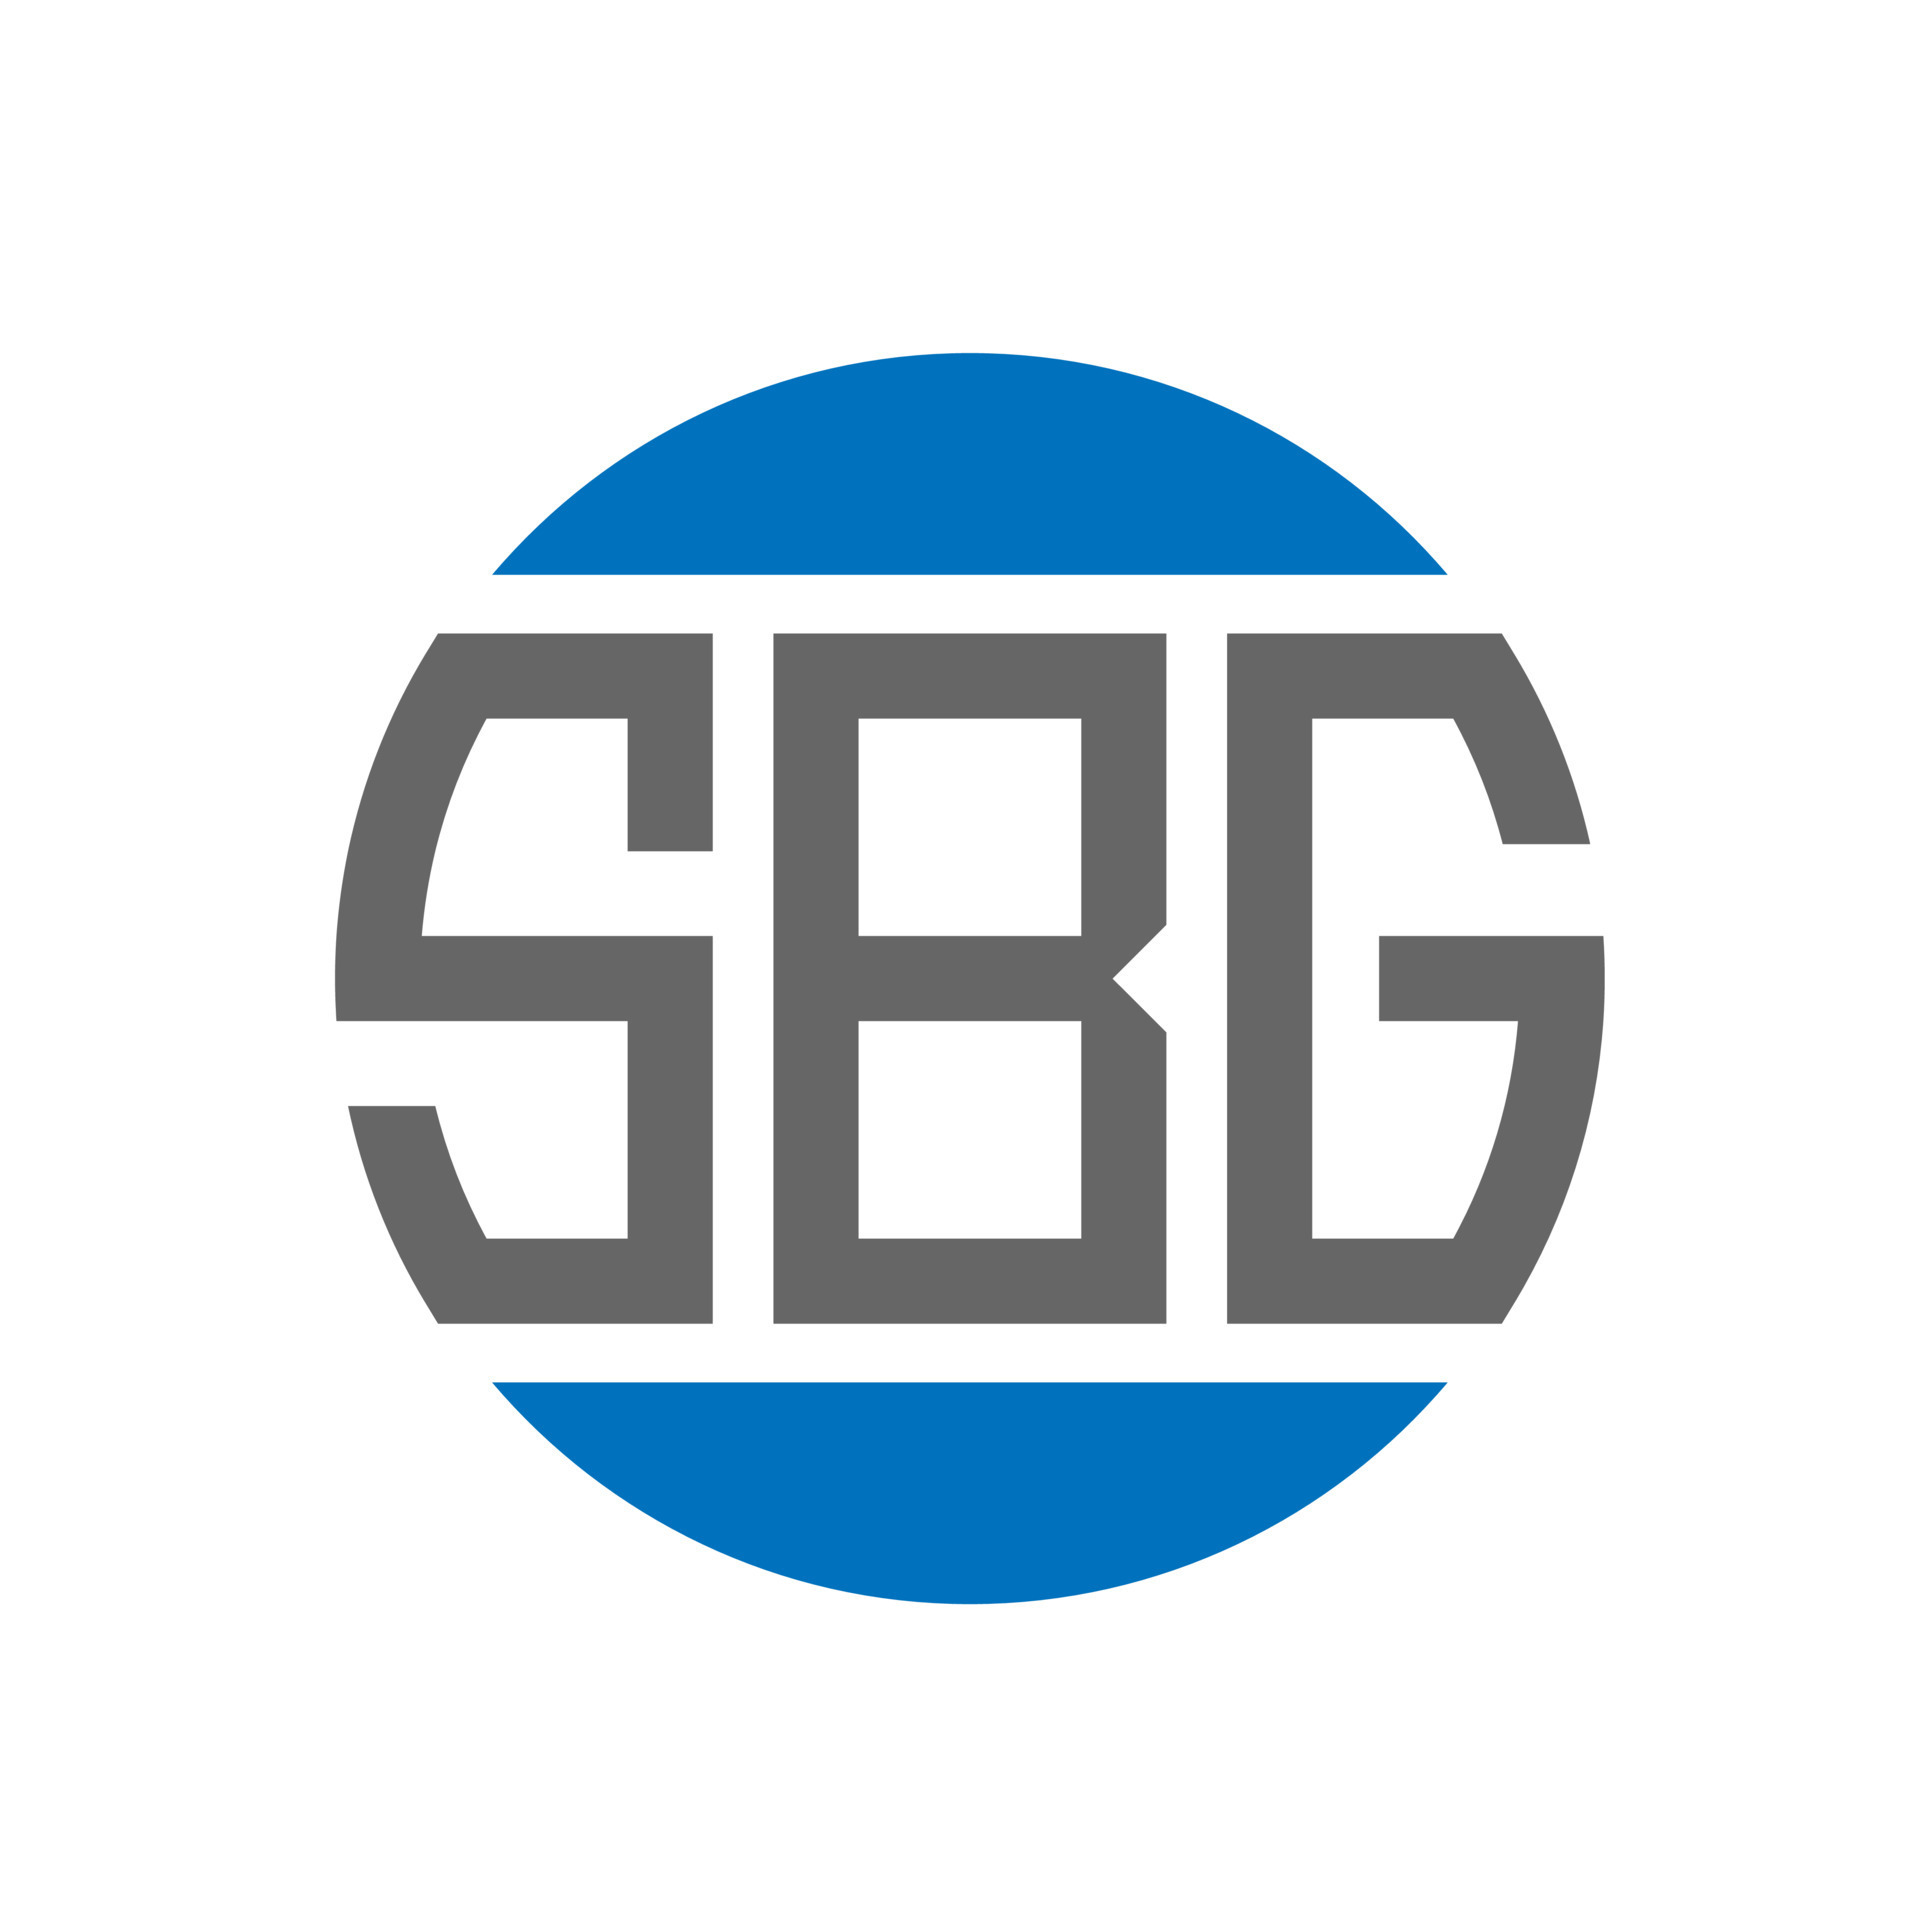 Premium Vector | Sbg initial modern logo design vector icon template